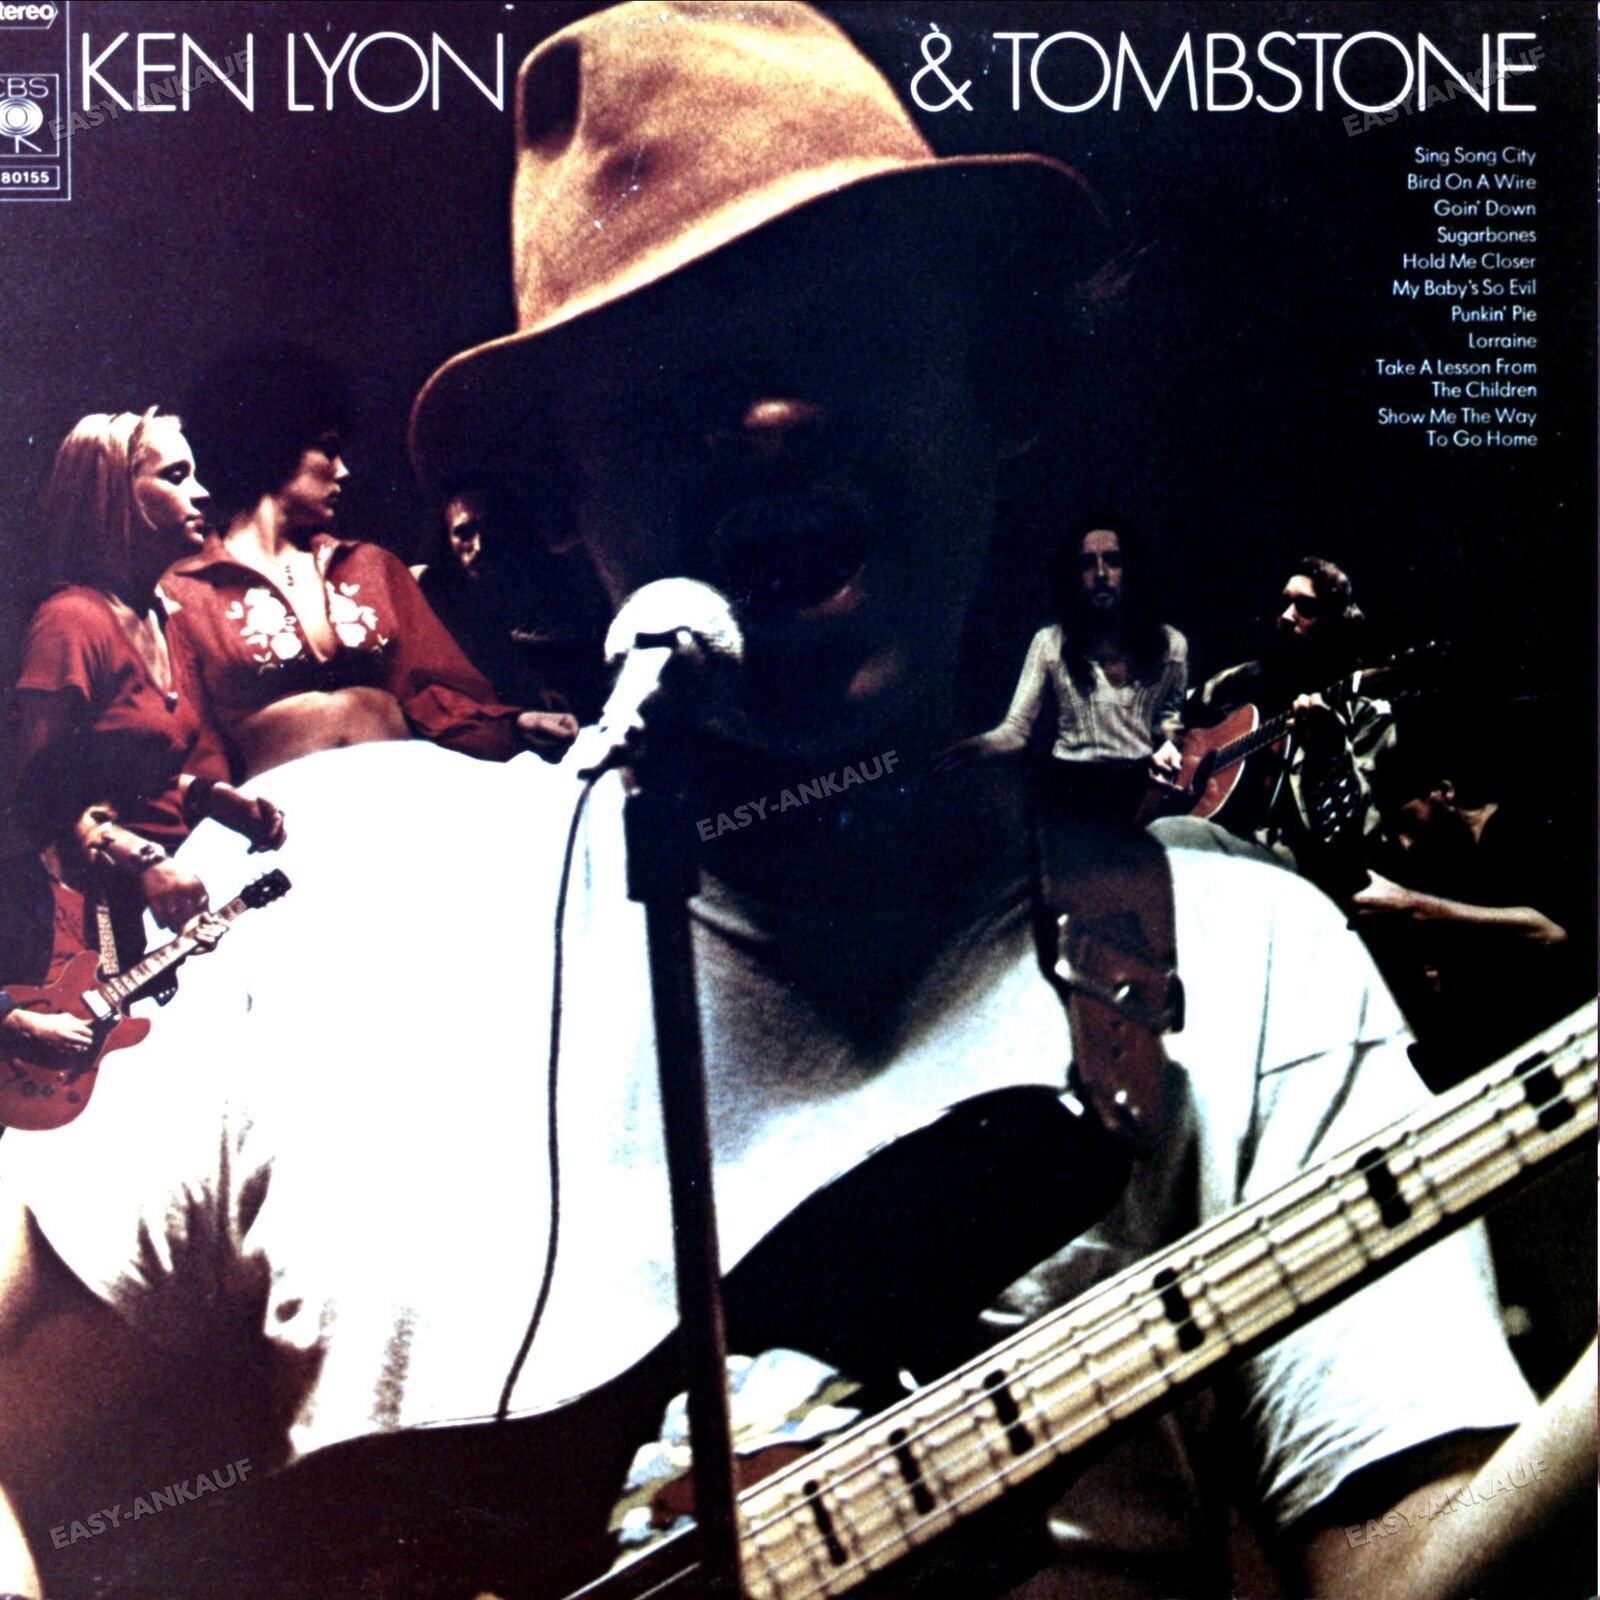 Ken Lyon & Tombstone - Ken Lyon & Tombstone LP (VG/VG) .*